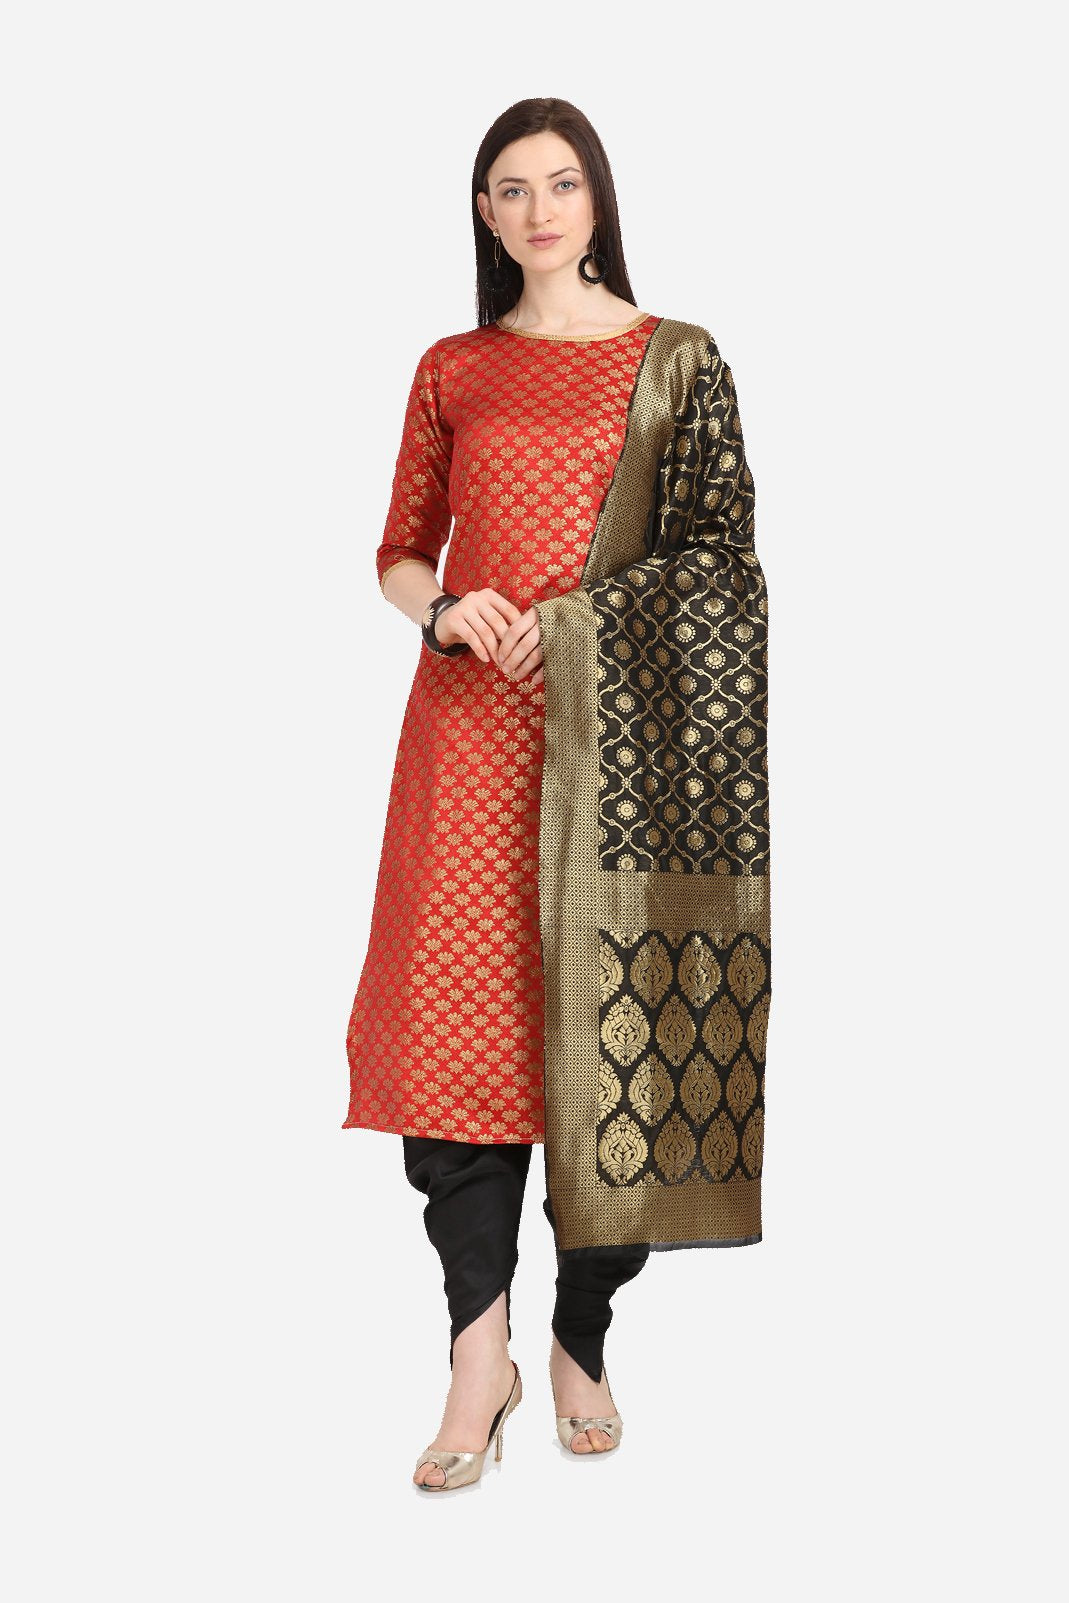 Shop Green Printed Art Silk Cotton Gown Festive Wear Online at Best Price |  Cbazaar